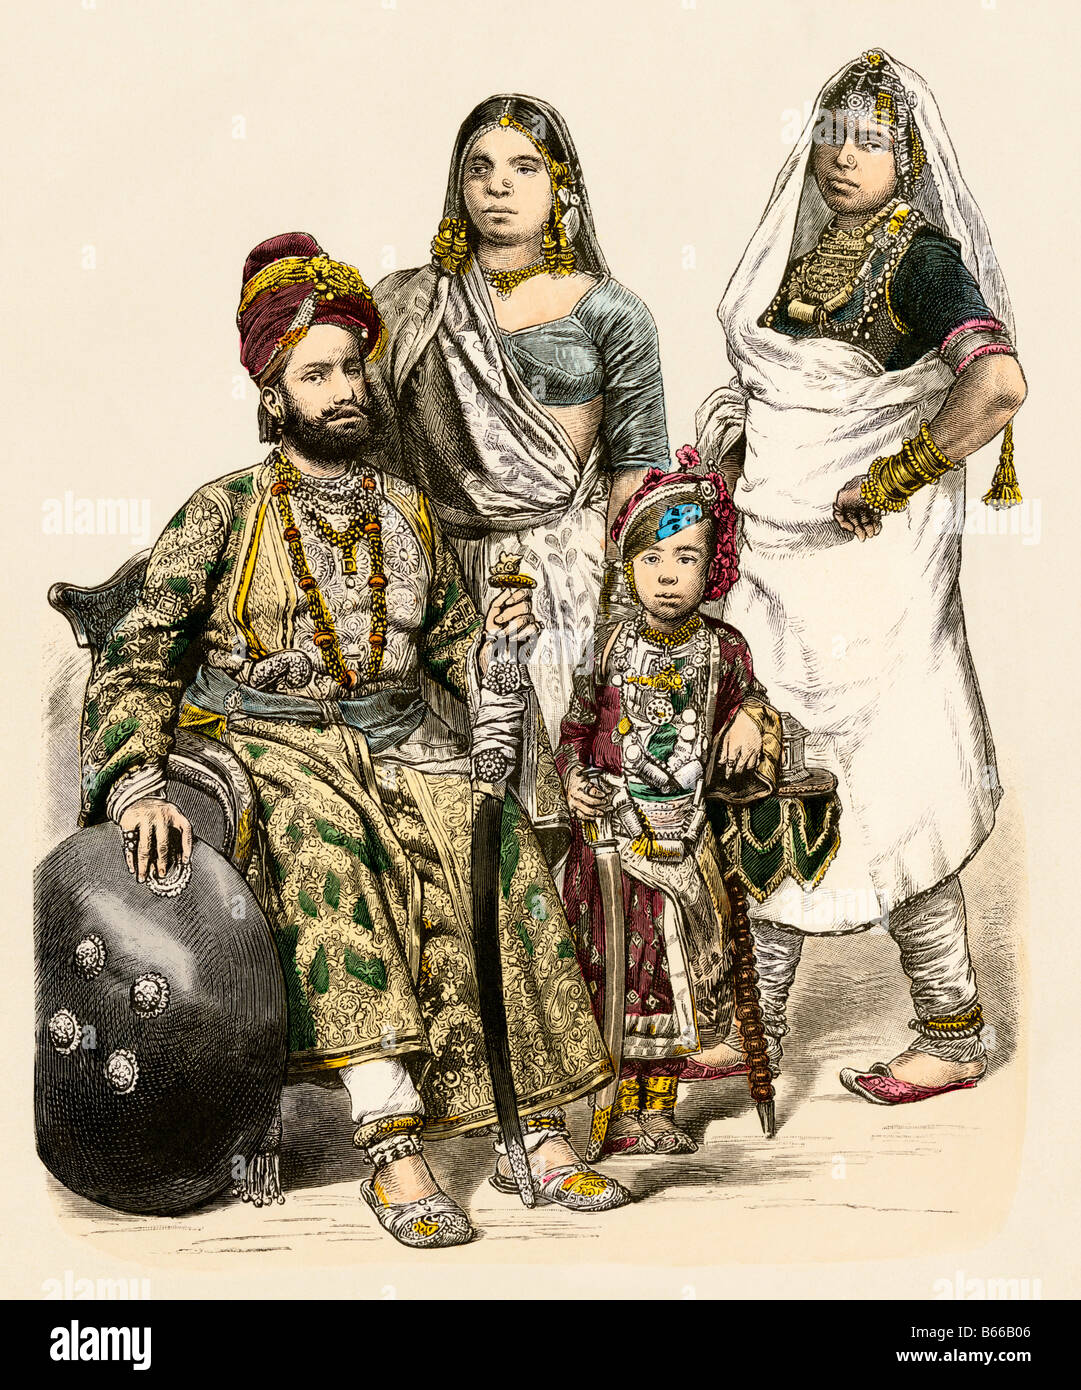 Prince avec sa famille et une femme fonctionnaire hindou de l'Inde des années 1800. Impression couleur à la main Banque D'Images